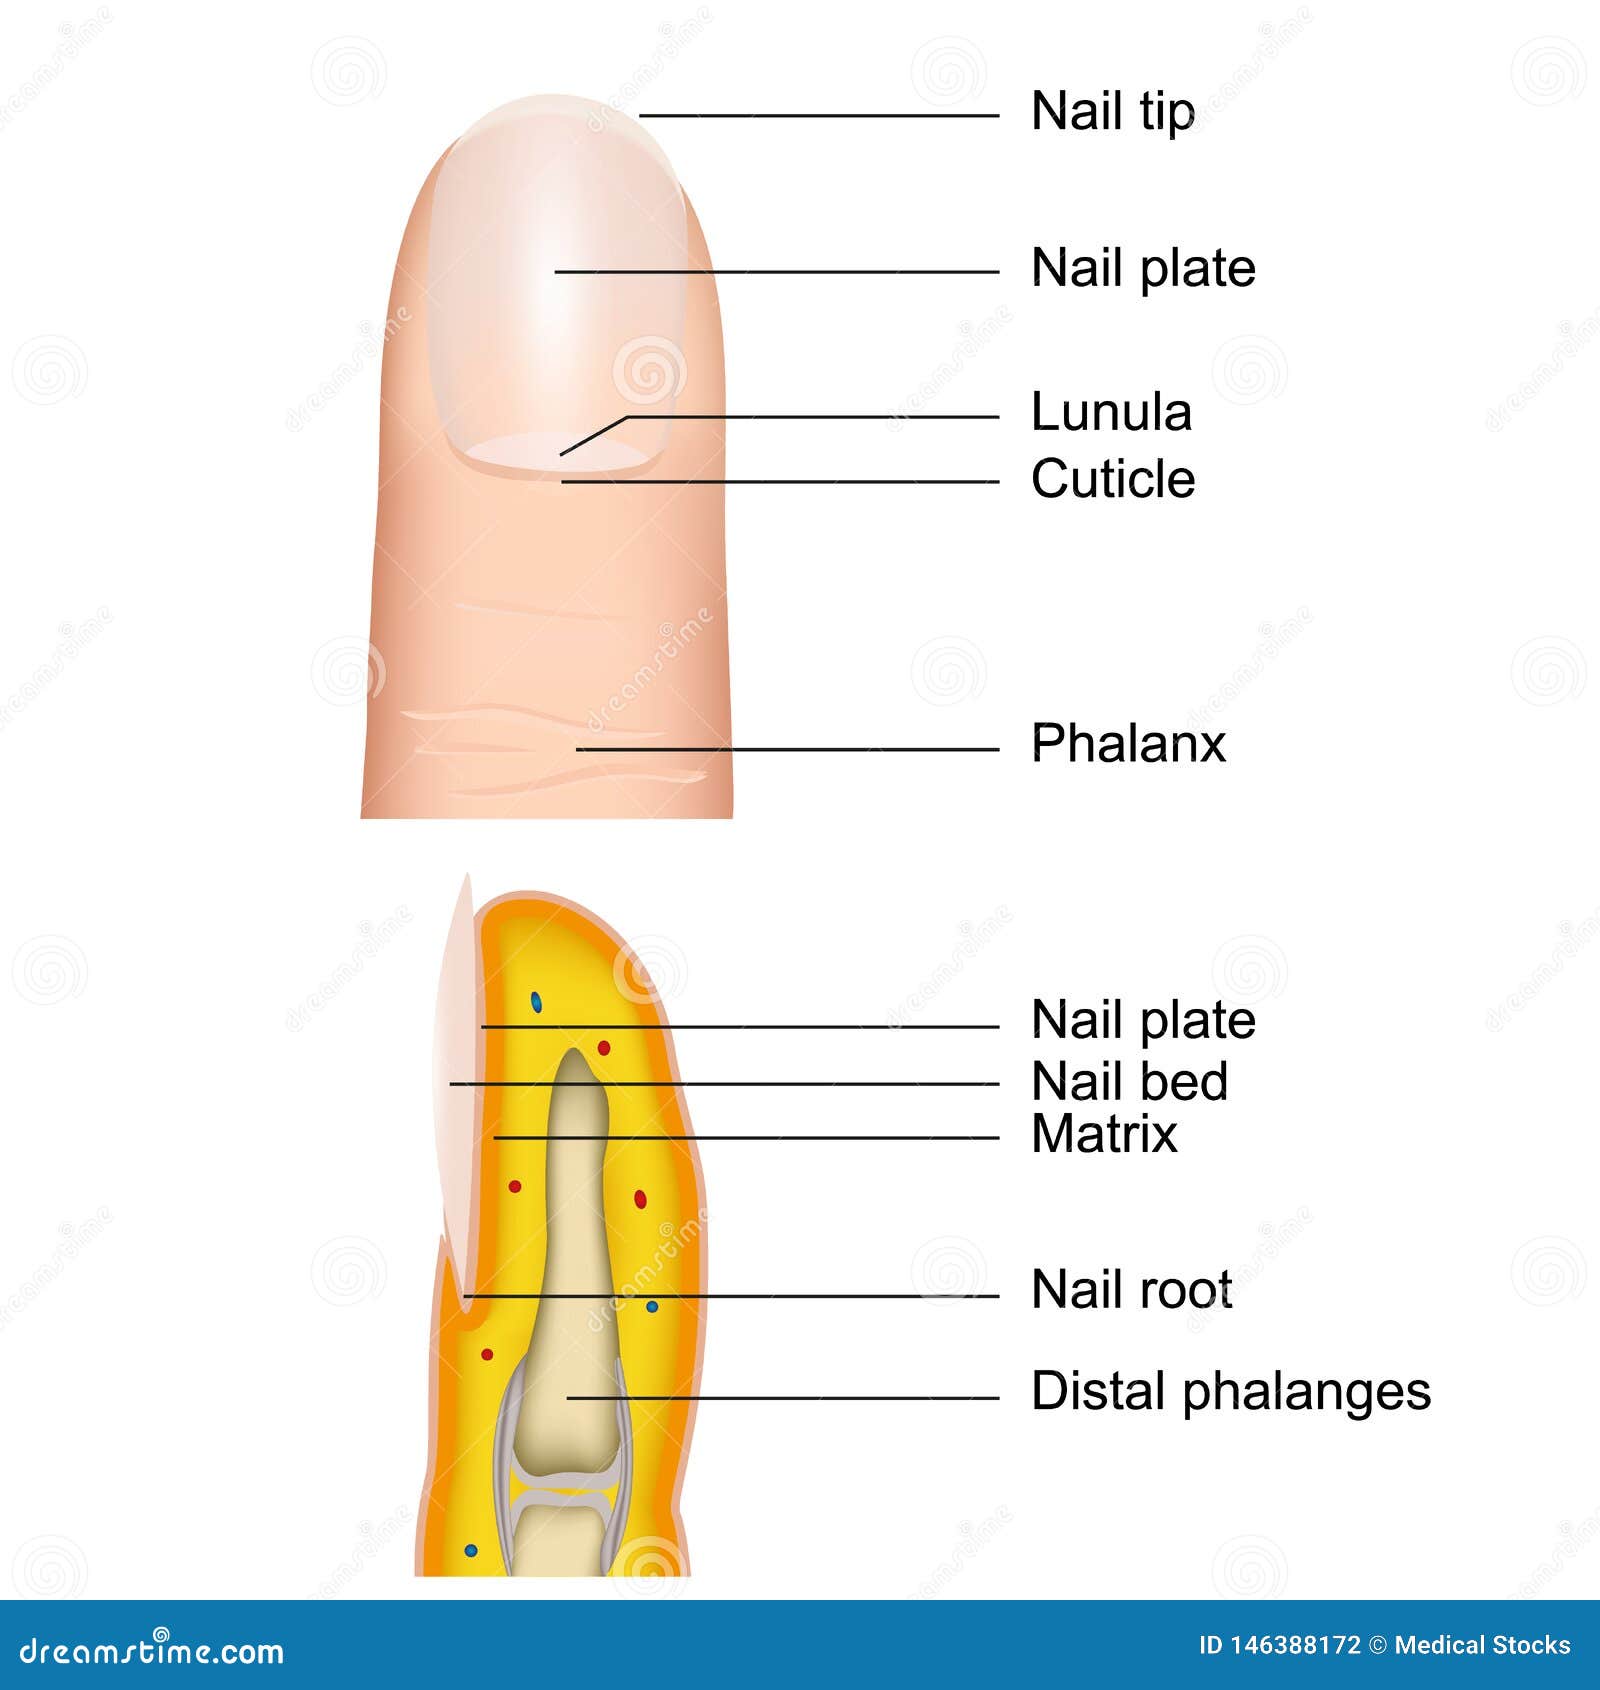 Nail Anatomy | Nail plate, Smile lines, Nails